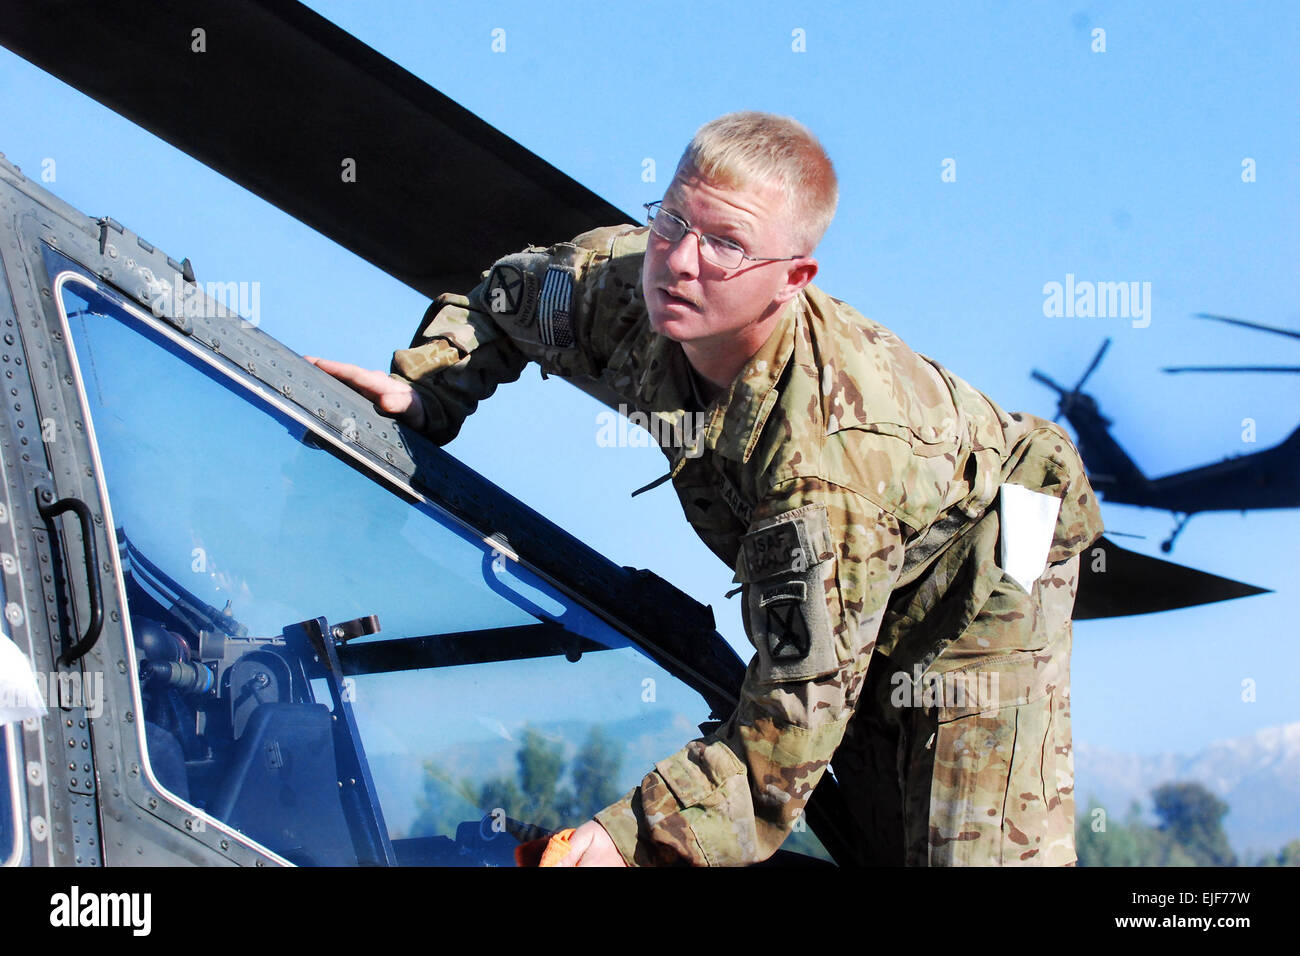 Eine AH-64 Apache Hubschrauber Werkstatt aus dem 1. Angriff/Aufklärungs-Bataillon, 10. Combat Aviation Brigade, Task Force Tigershark, bereitet ein Flugzeug Flug vor Durchführung einer Sicherheits- und Aufklärungsmission am 12. November auf Forward Operating Base Fenty, Afghanistan. 10. combat Aviation Brigade Apache Hubschrauber bieten häufig bewaffnet Luftaufnahmen über Uhr und Kampffähigkeit Fähigkeiten zur Unterstützung Boden Kommandanten zu schließen.  US Army Captain Peter Smedberg Stockfoto